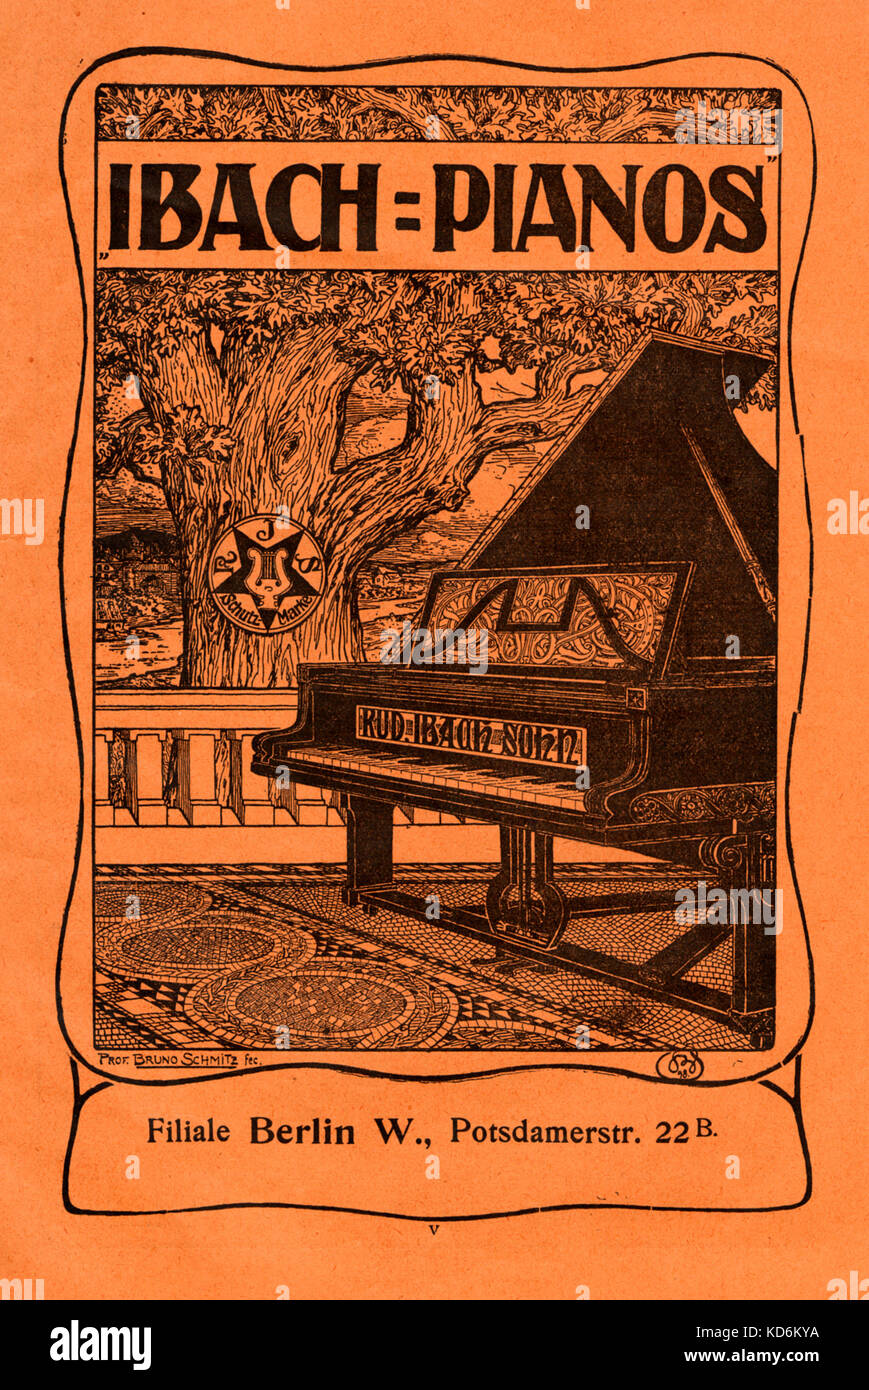 Pianos Ibach - début du 20e siècle annonce. Potsdamerstrasse avec Berlin Adresse : 22B, Berlin Ouest. Banque D'Images